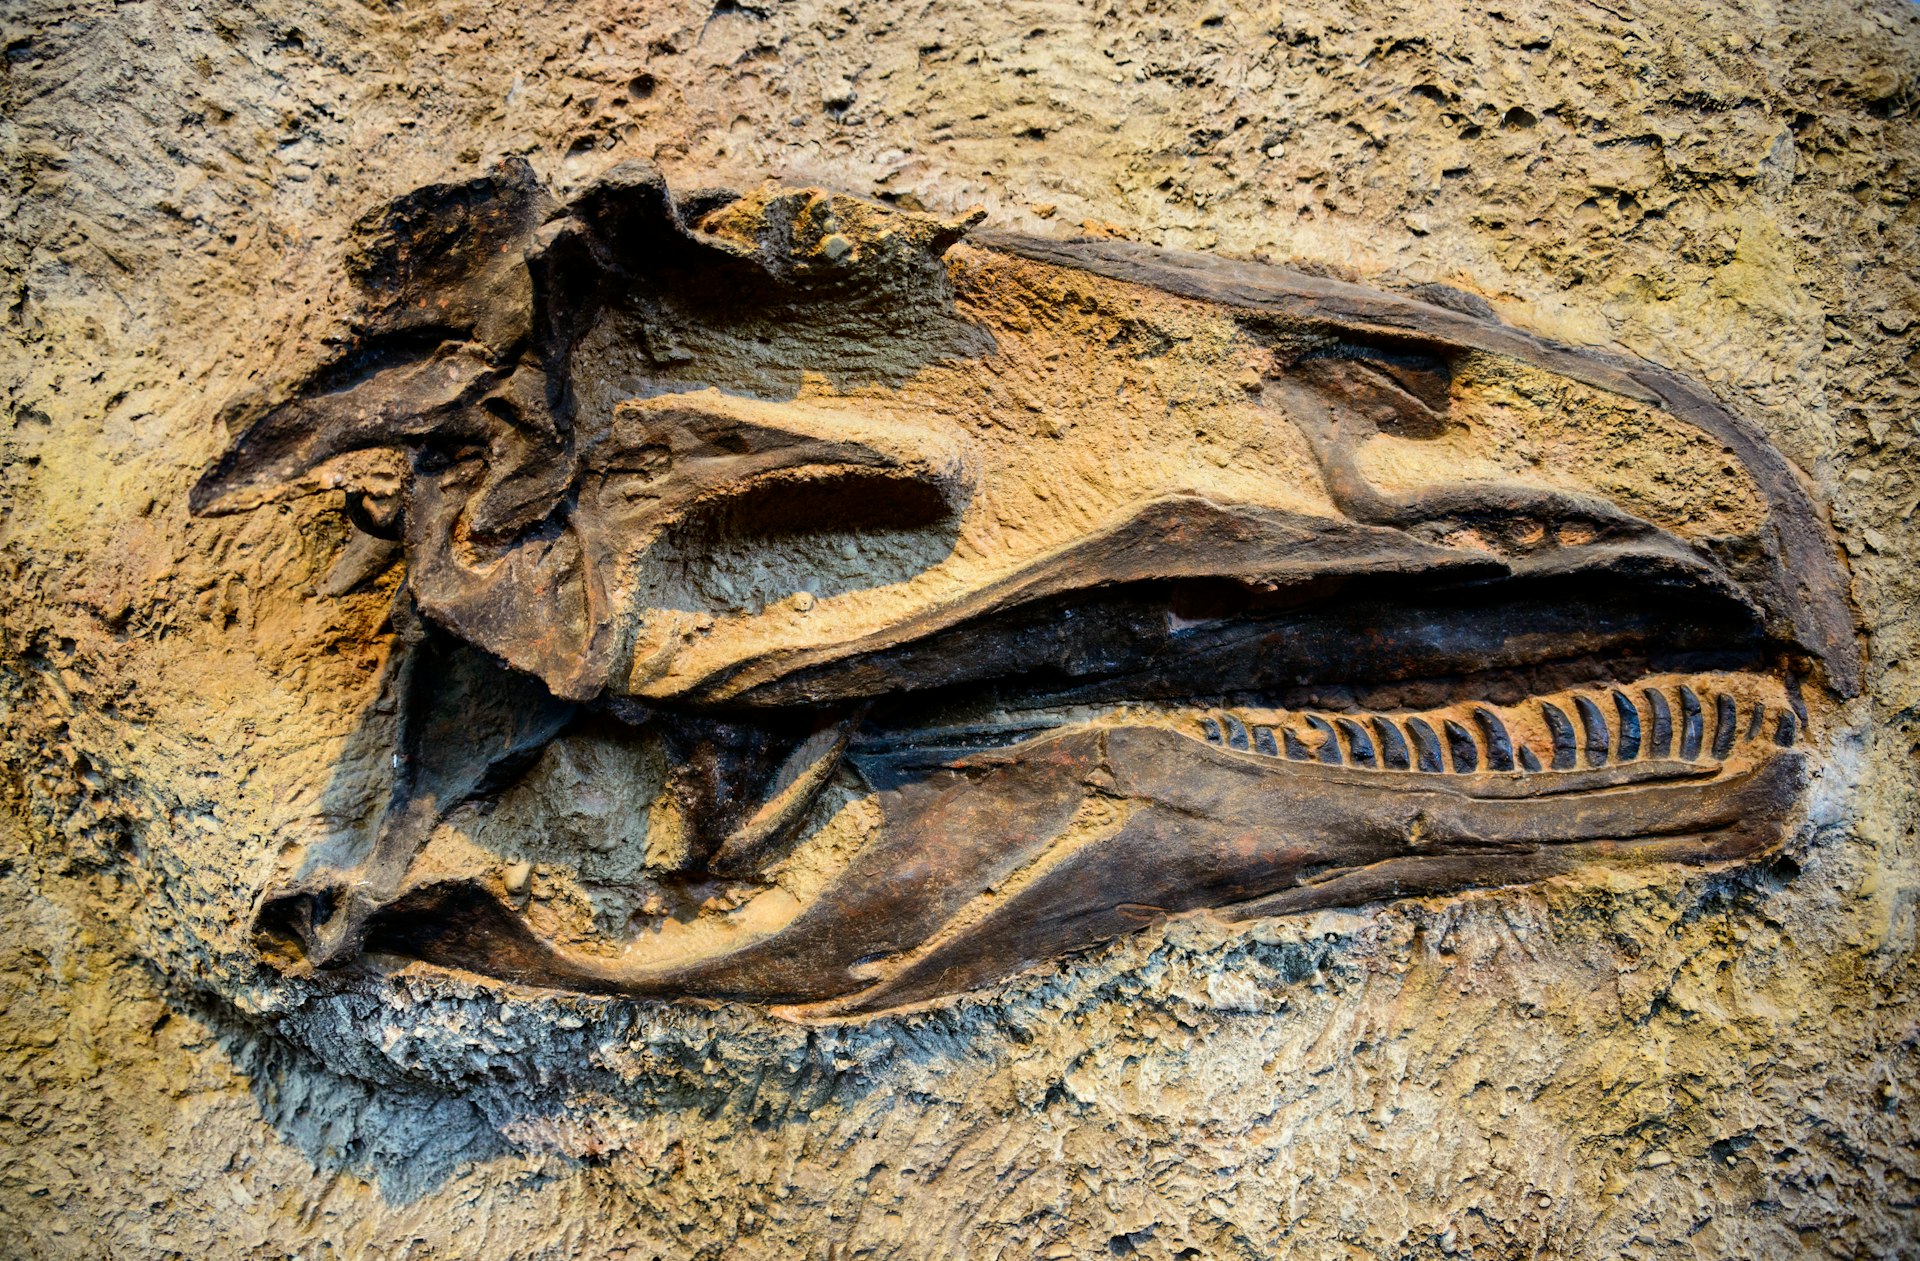 A dinosaur skull embedded in rock at Dinosaur National Monument, Colorado